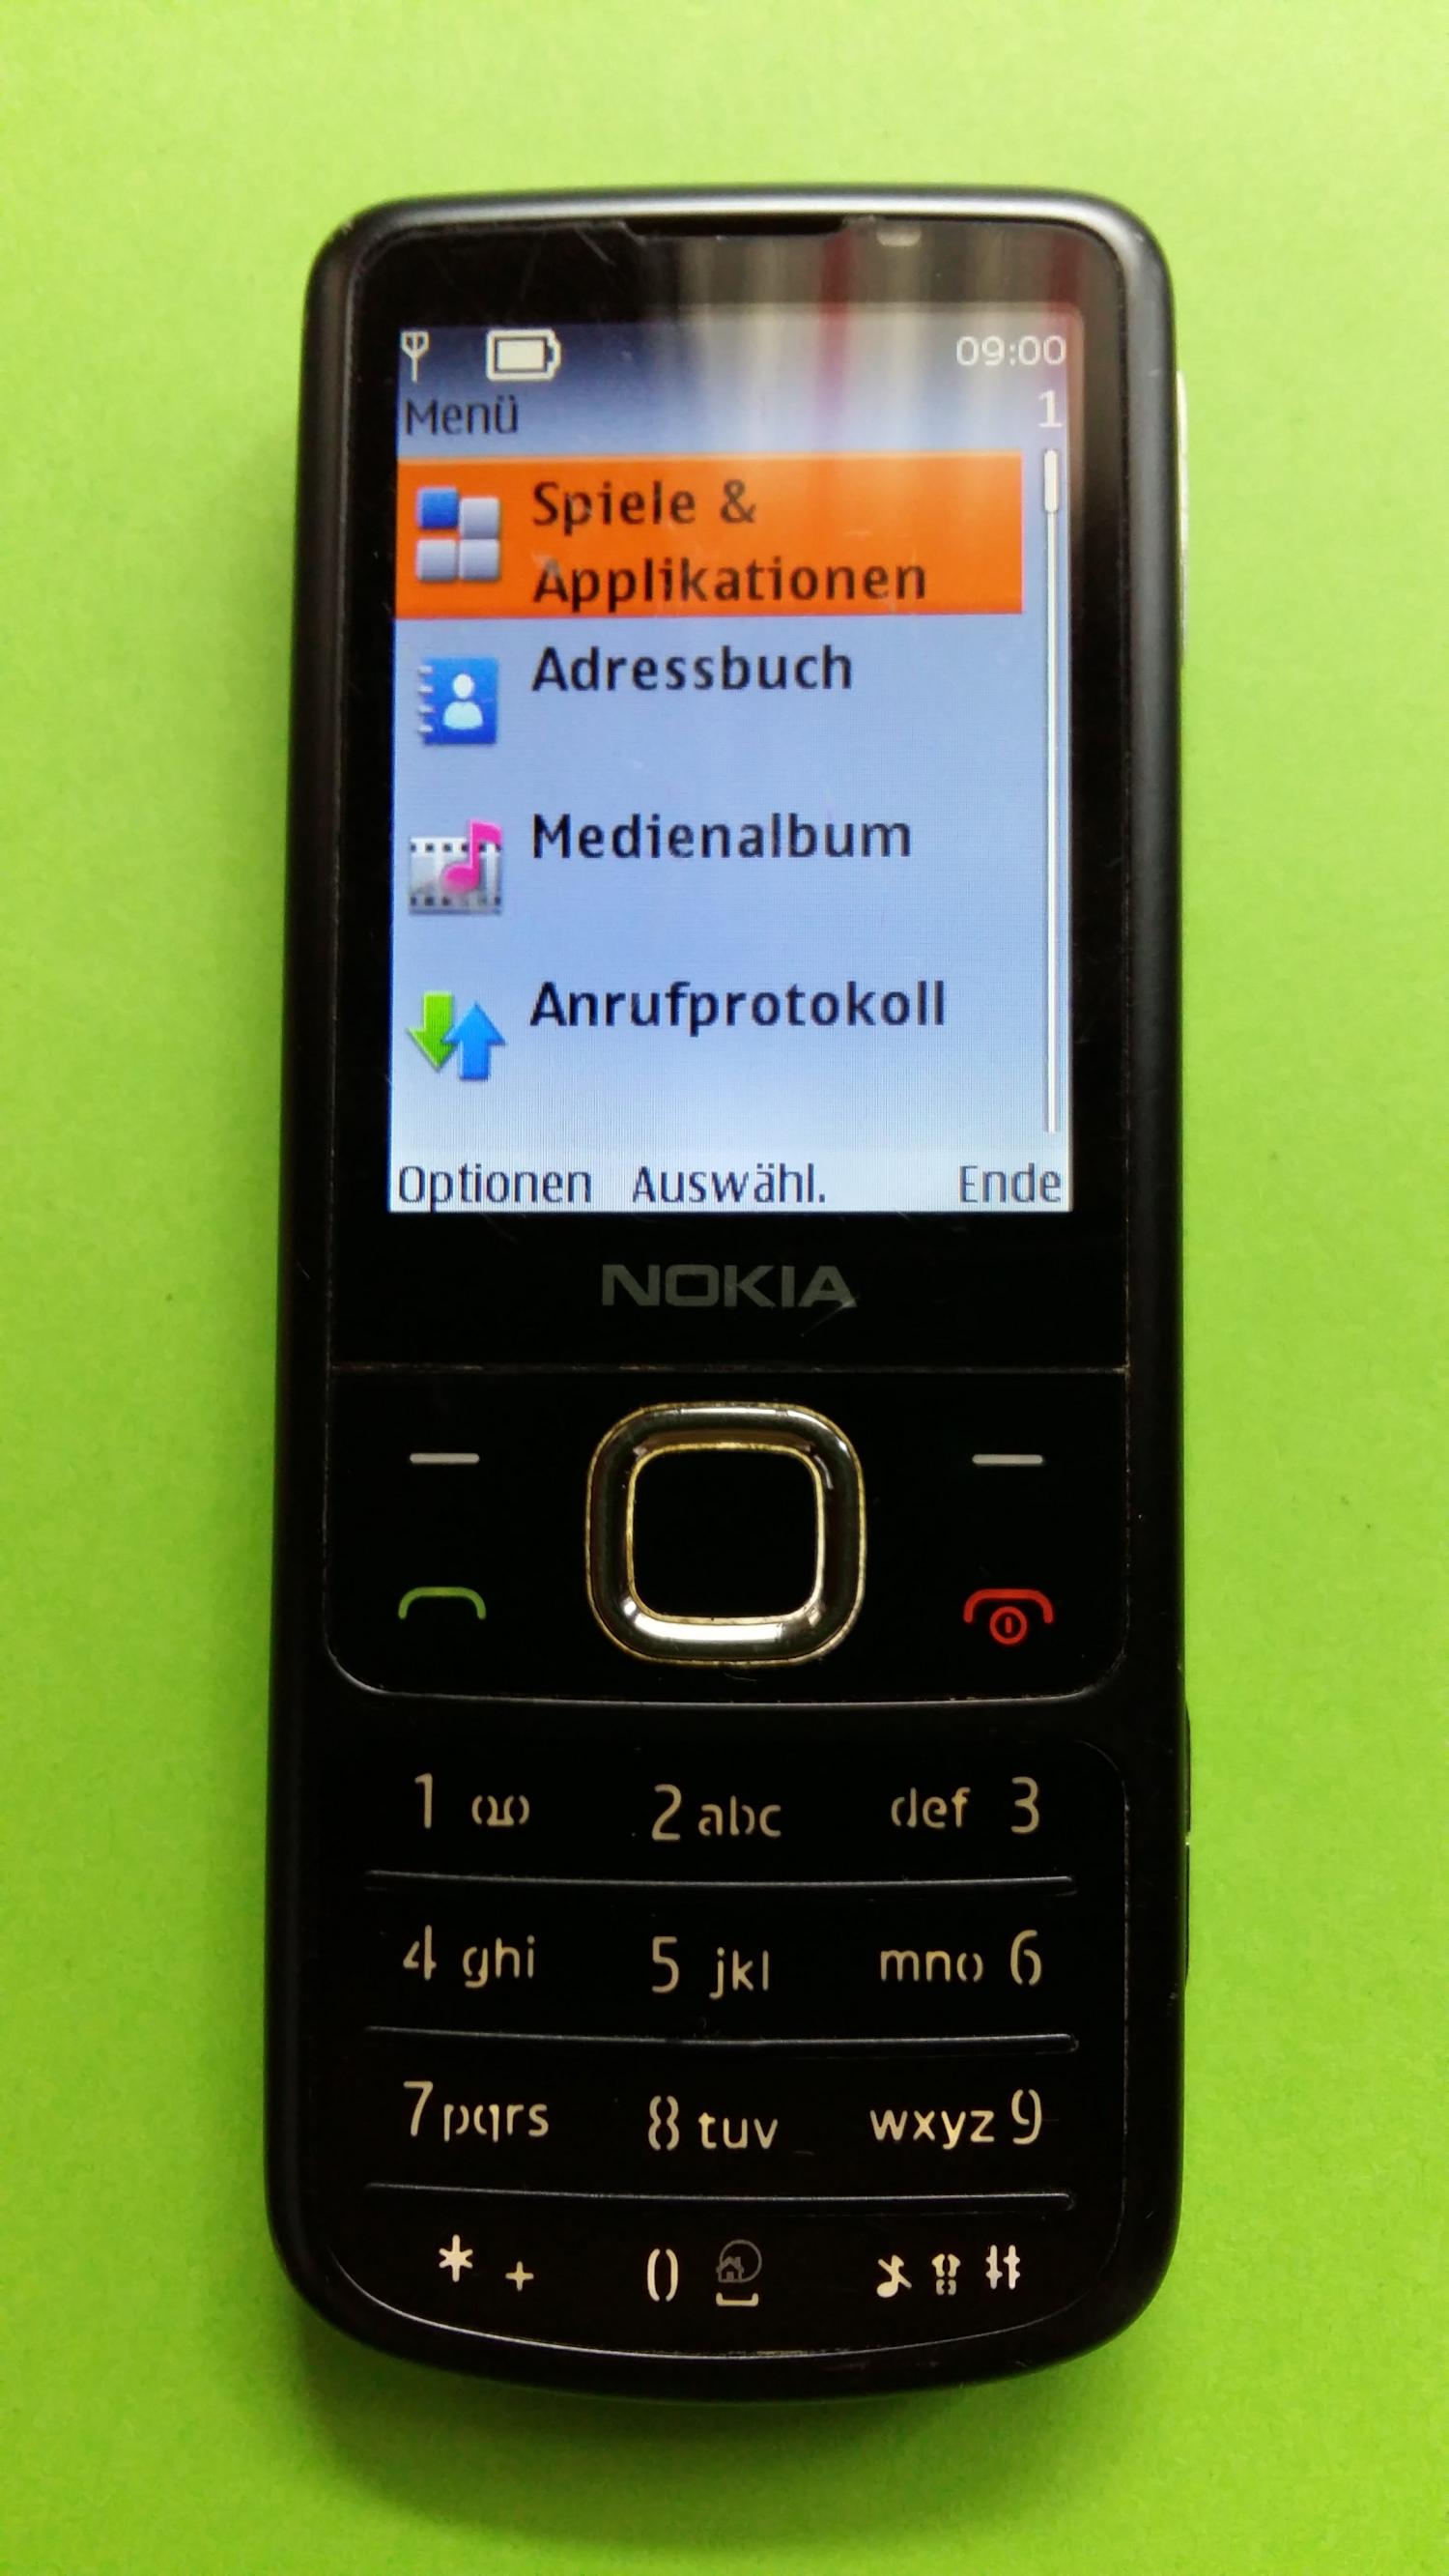 image-7337041-Nokia 6700C-1 (3)1.jpg